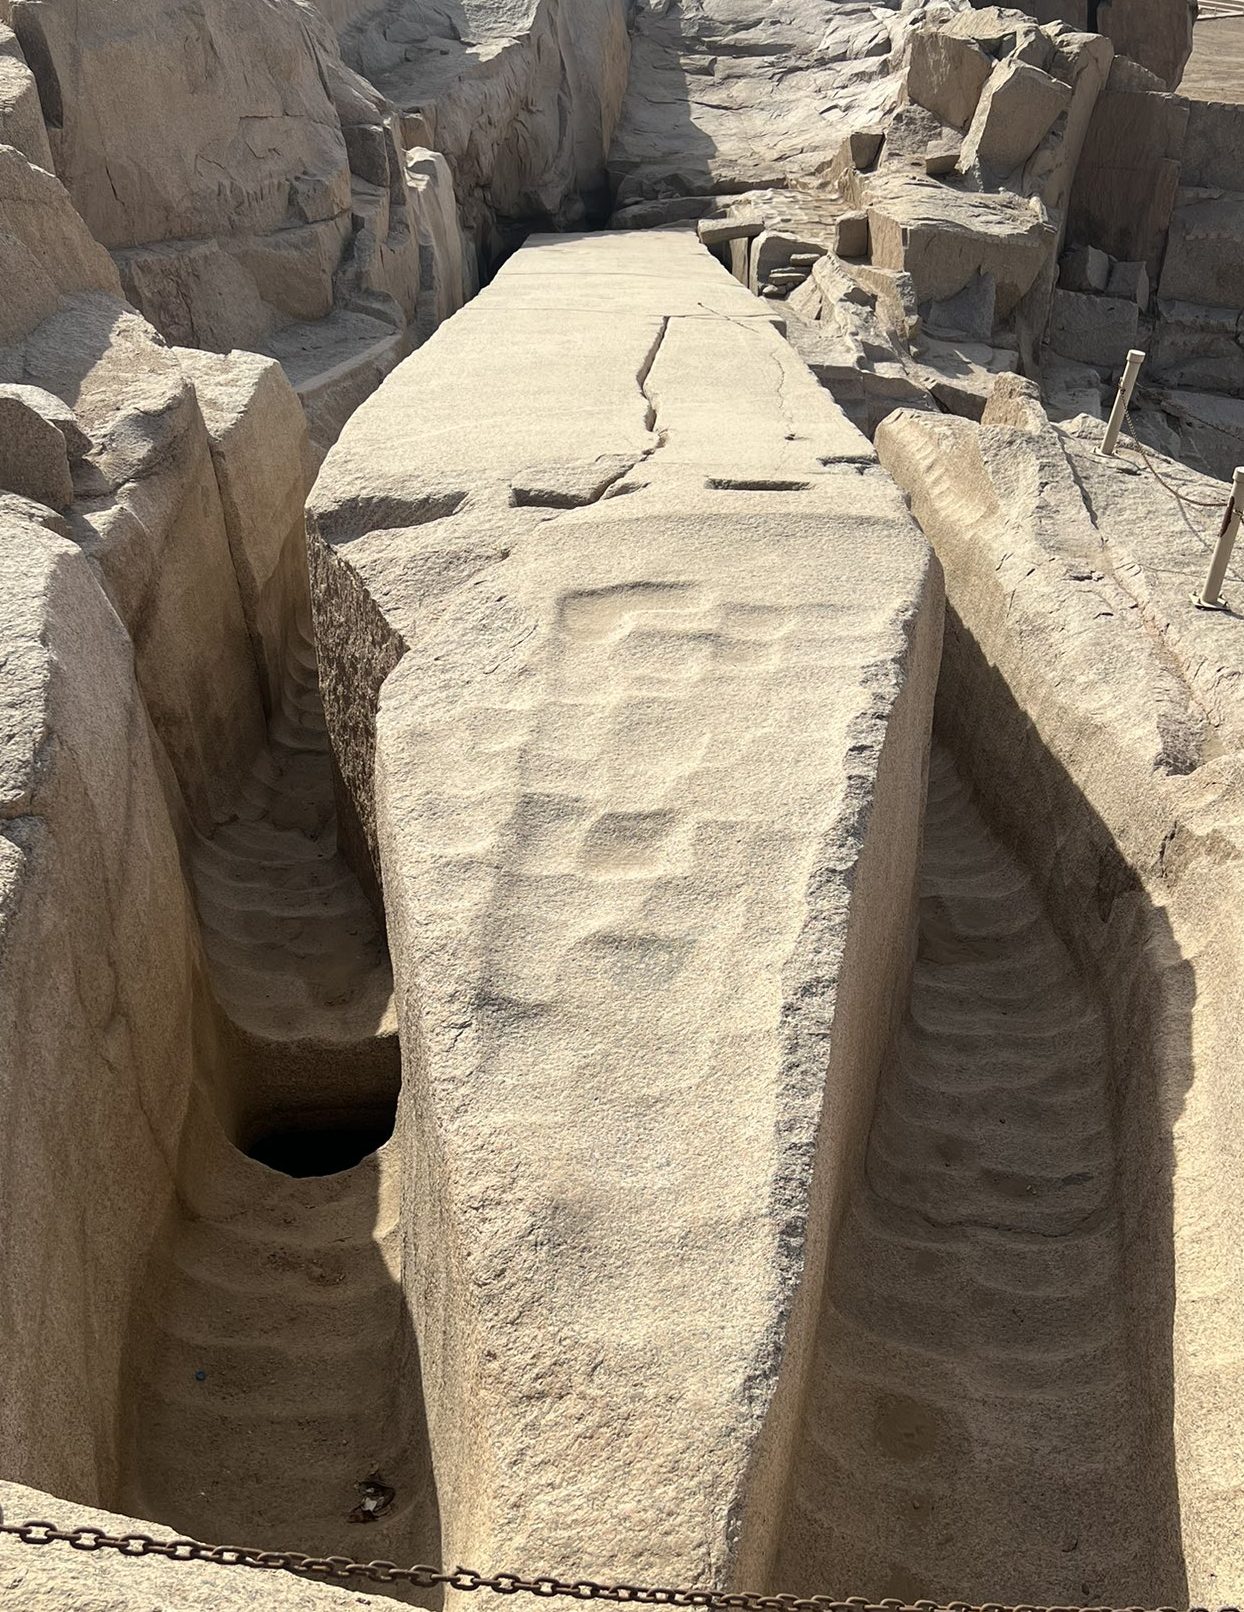 Aswan, Egypt, scoop marks on the obelisk